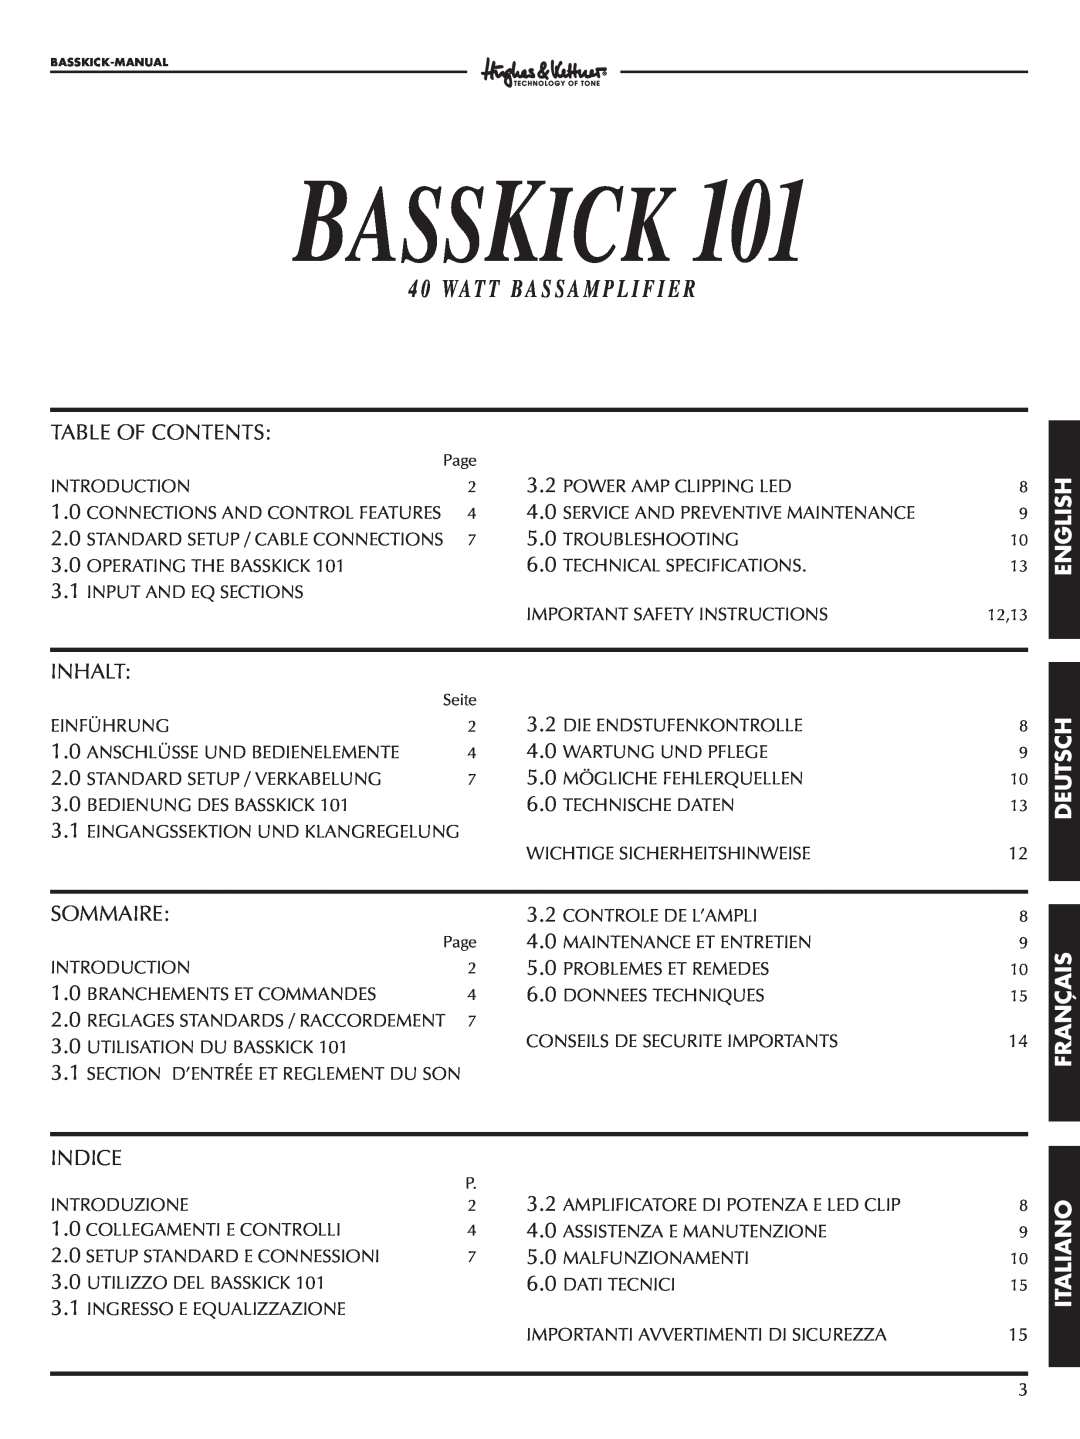 Hughes & Kettner Bass Kick 101 manual English, Deutsch Français Italiano, Basskick, 4 0 WA T T B A S S A M P L I F I E R 